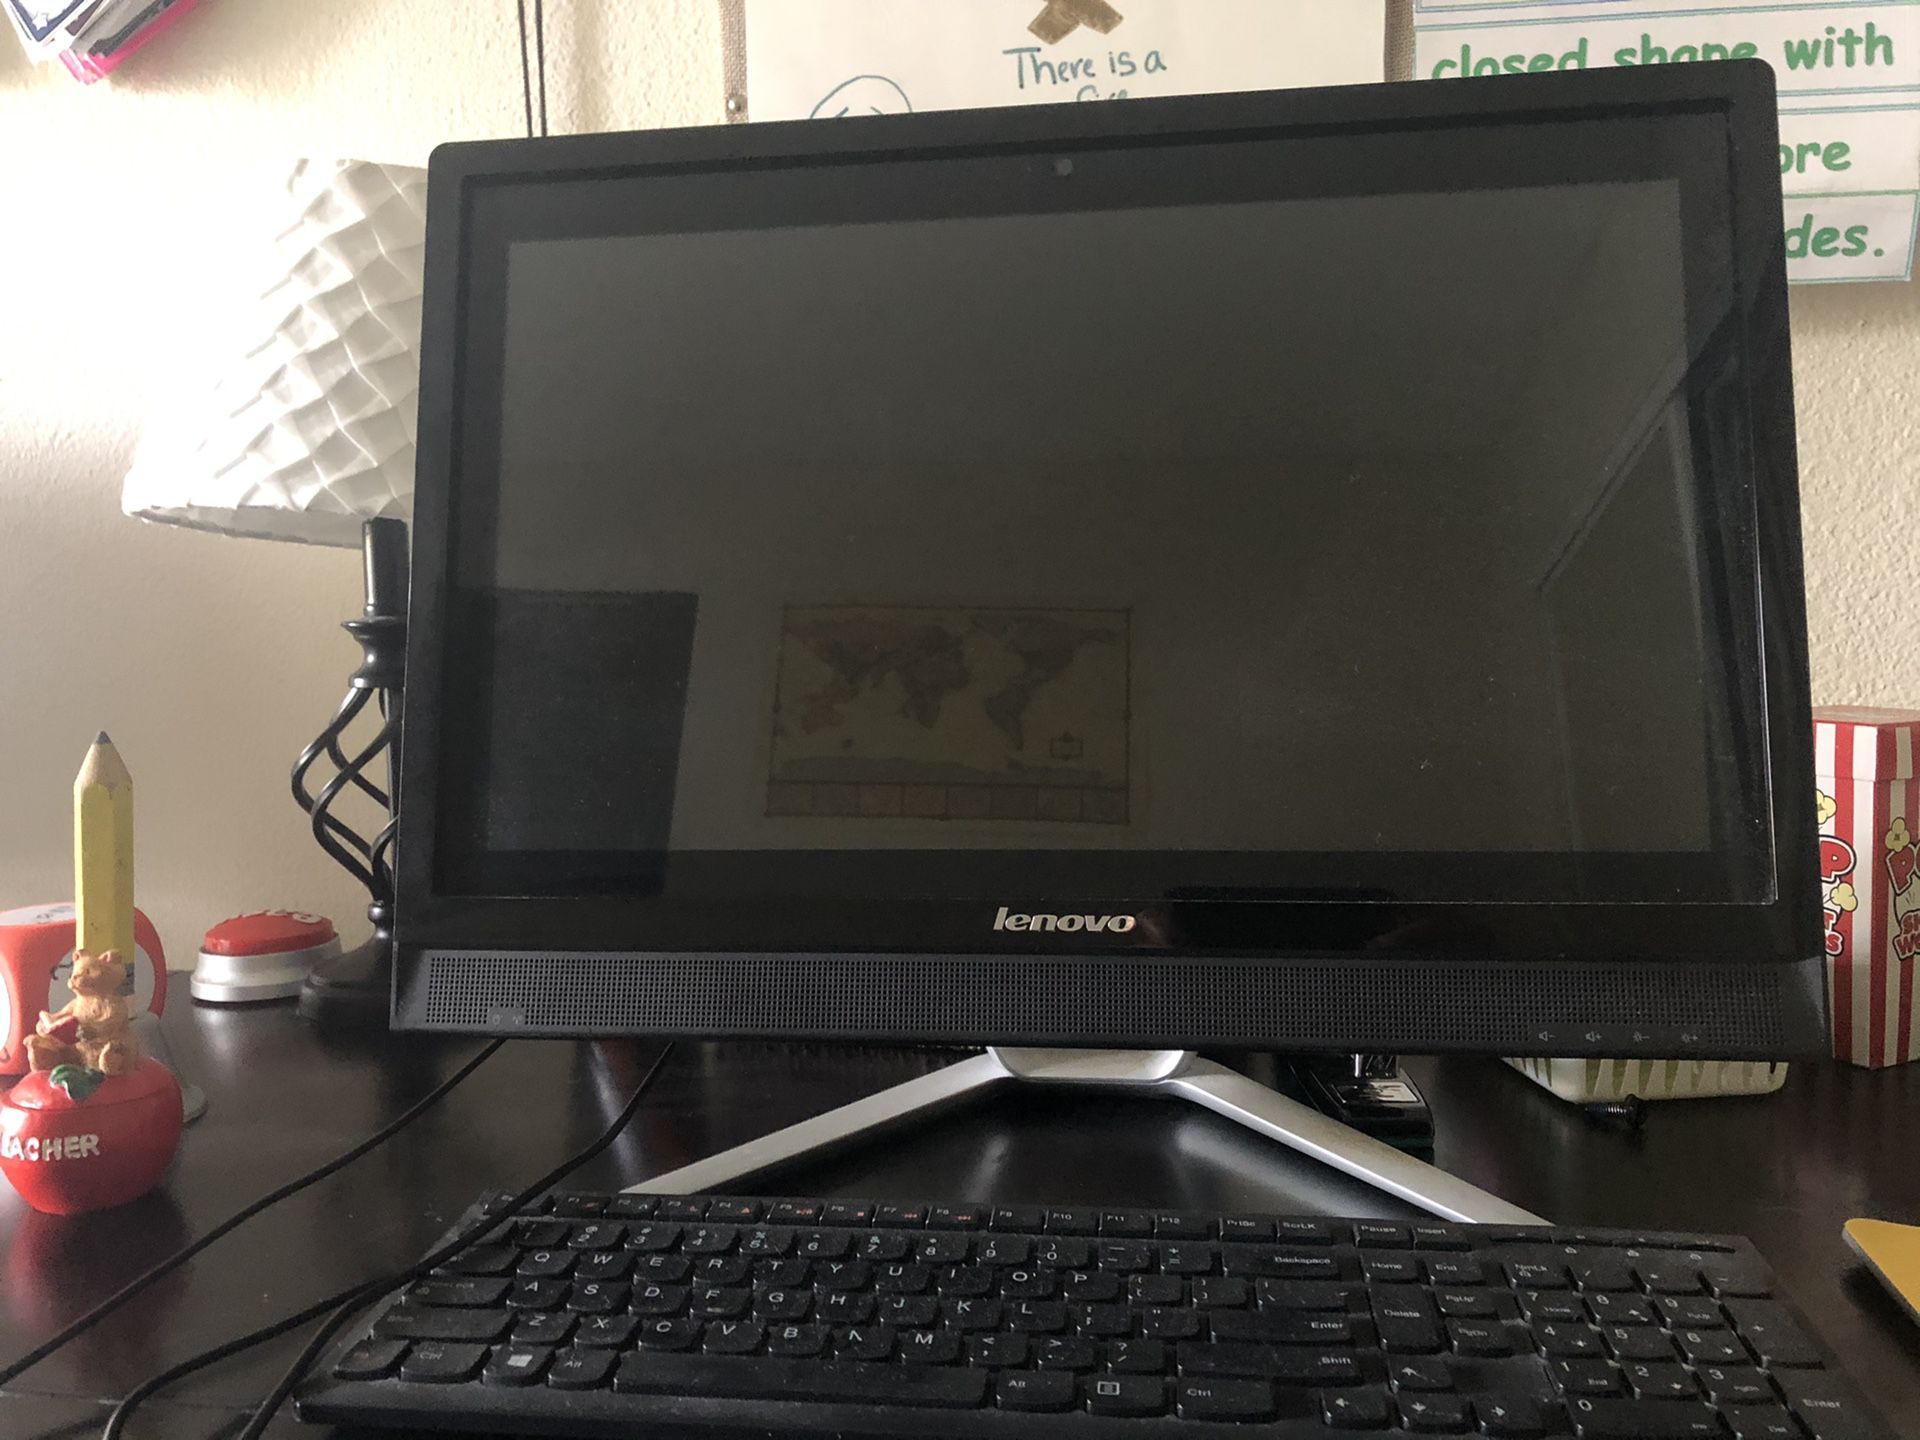 Lenovo desktop computer (touchscreen) and keyboard